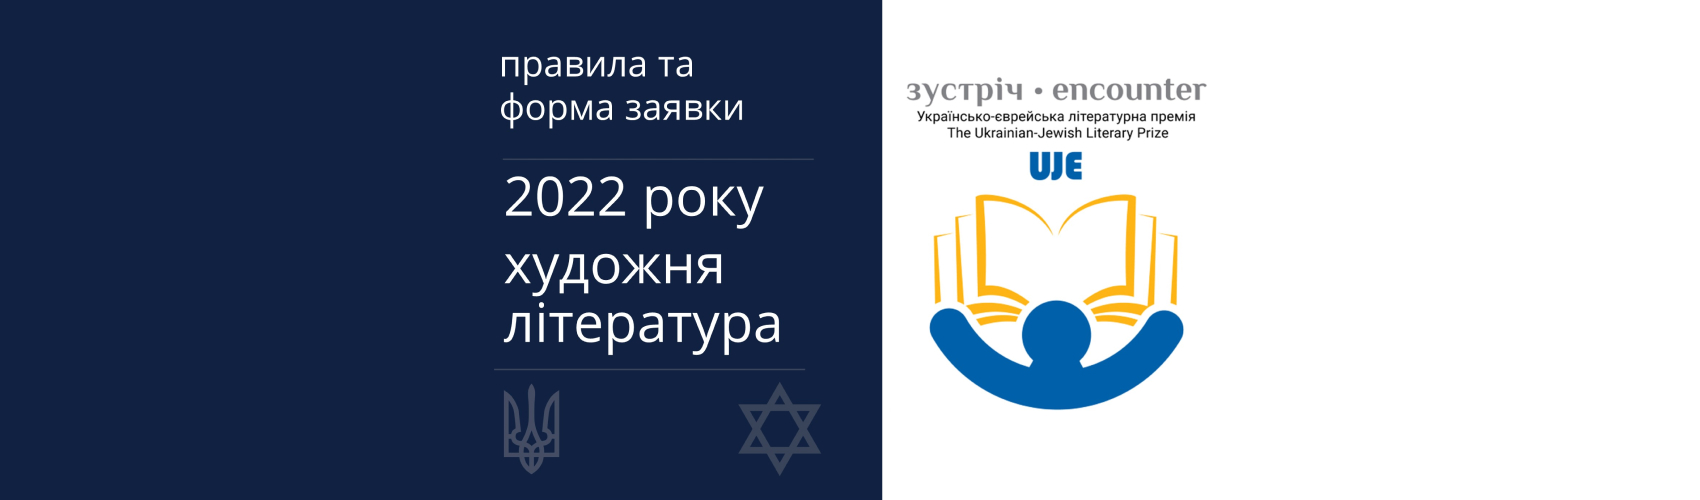 Розпочався прийом заявок на премію «Зустріч: Українсько-єврейська літературна премія»™ 2022 р.